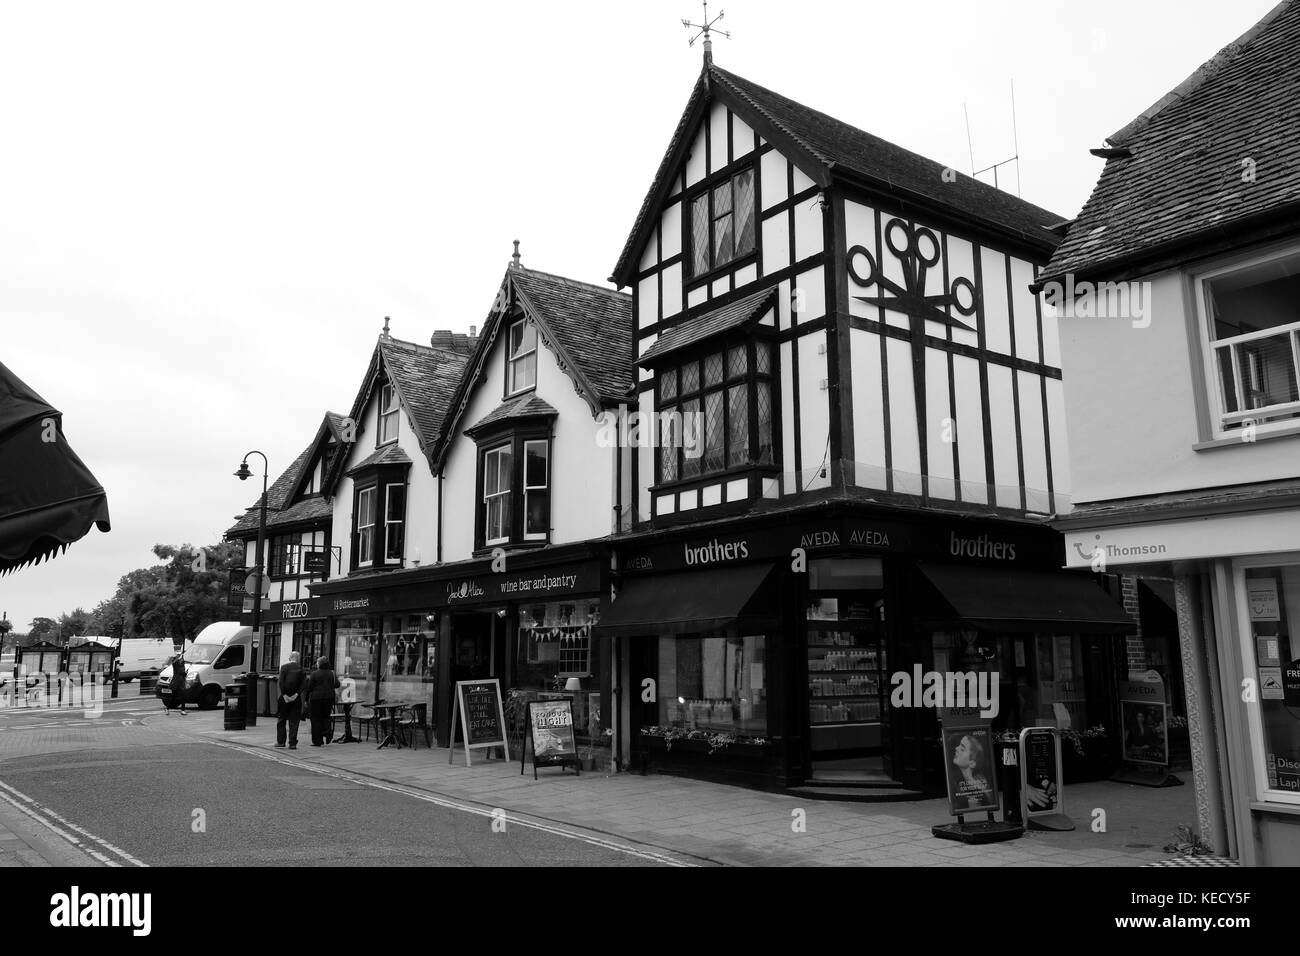 Giugno 2017 - Negozi, negozi e banche nella vecchia città inglese di Thame, in Oxfordshire. Inghilterra Foto Stock